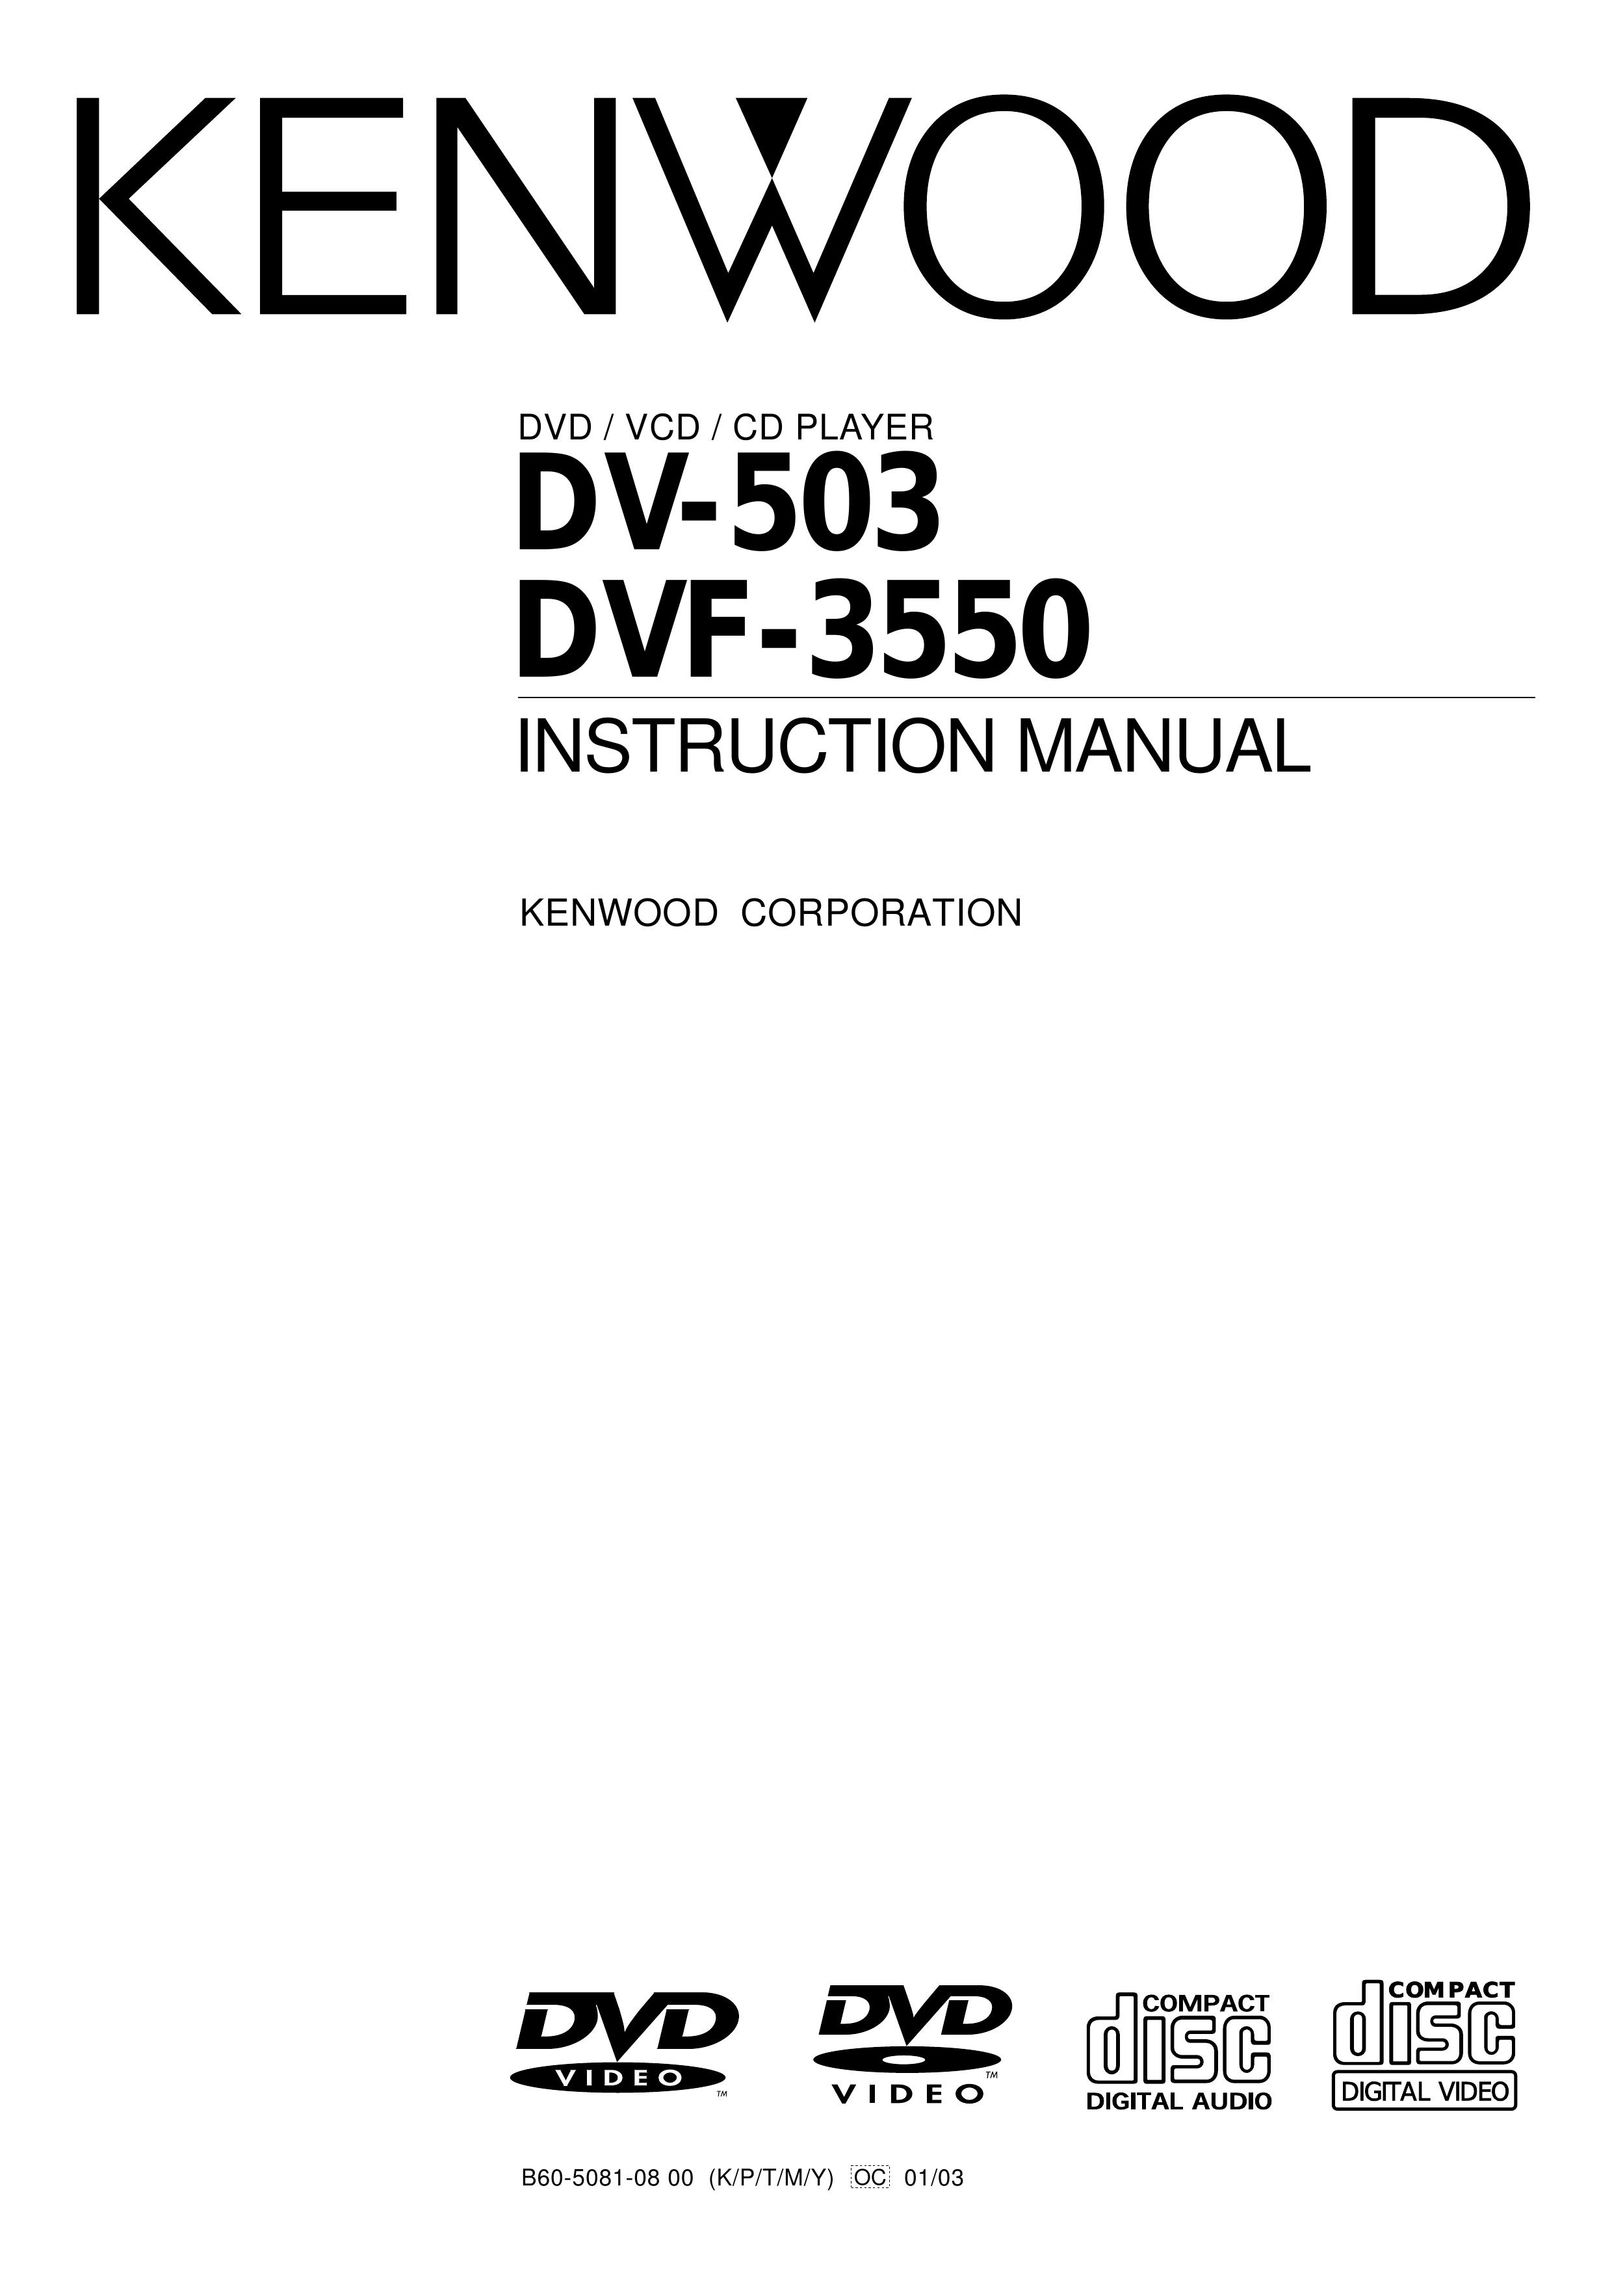 Kenwood DVF-3550 Portable DVD Player User Manual